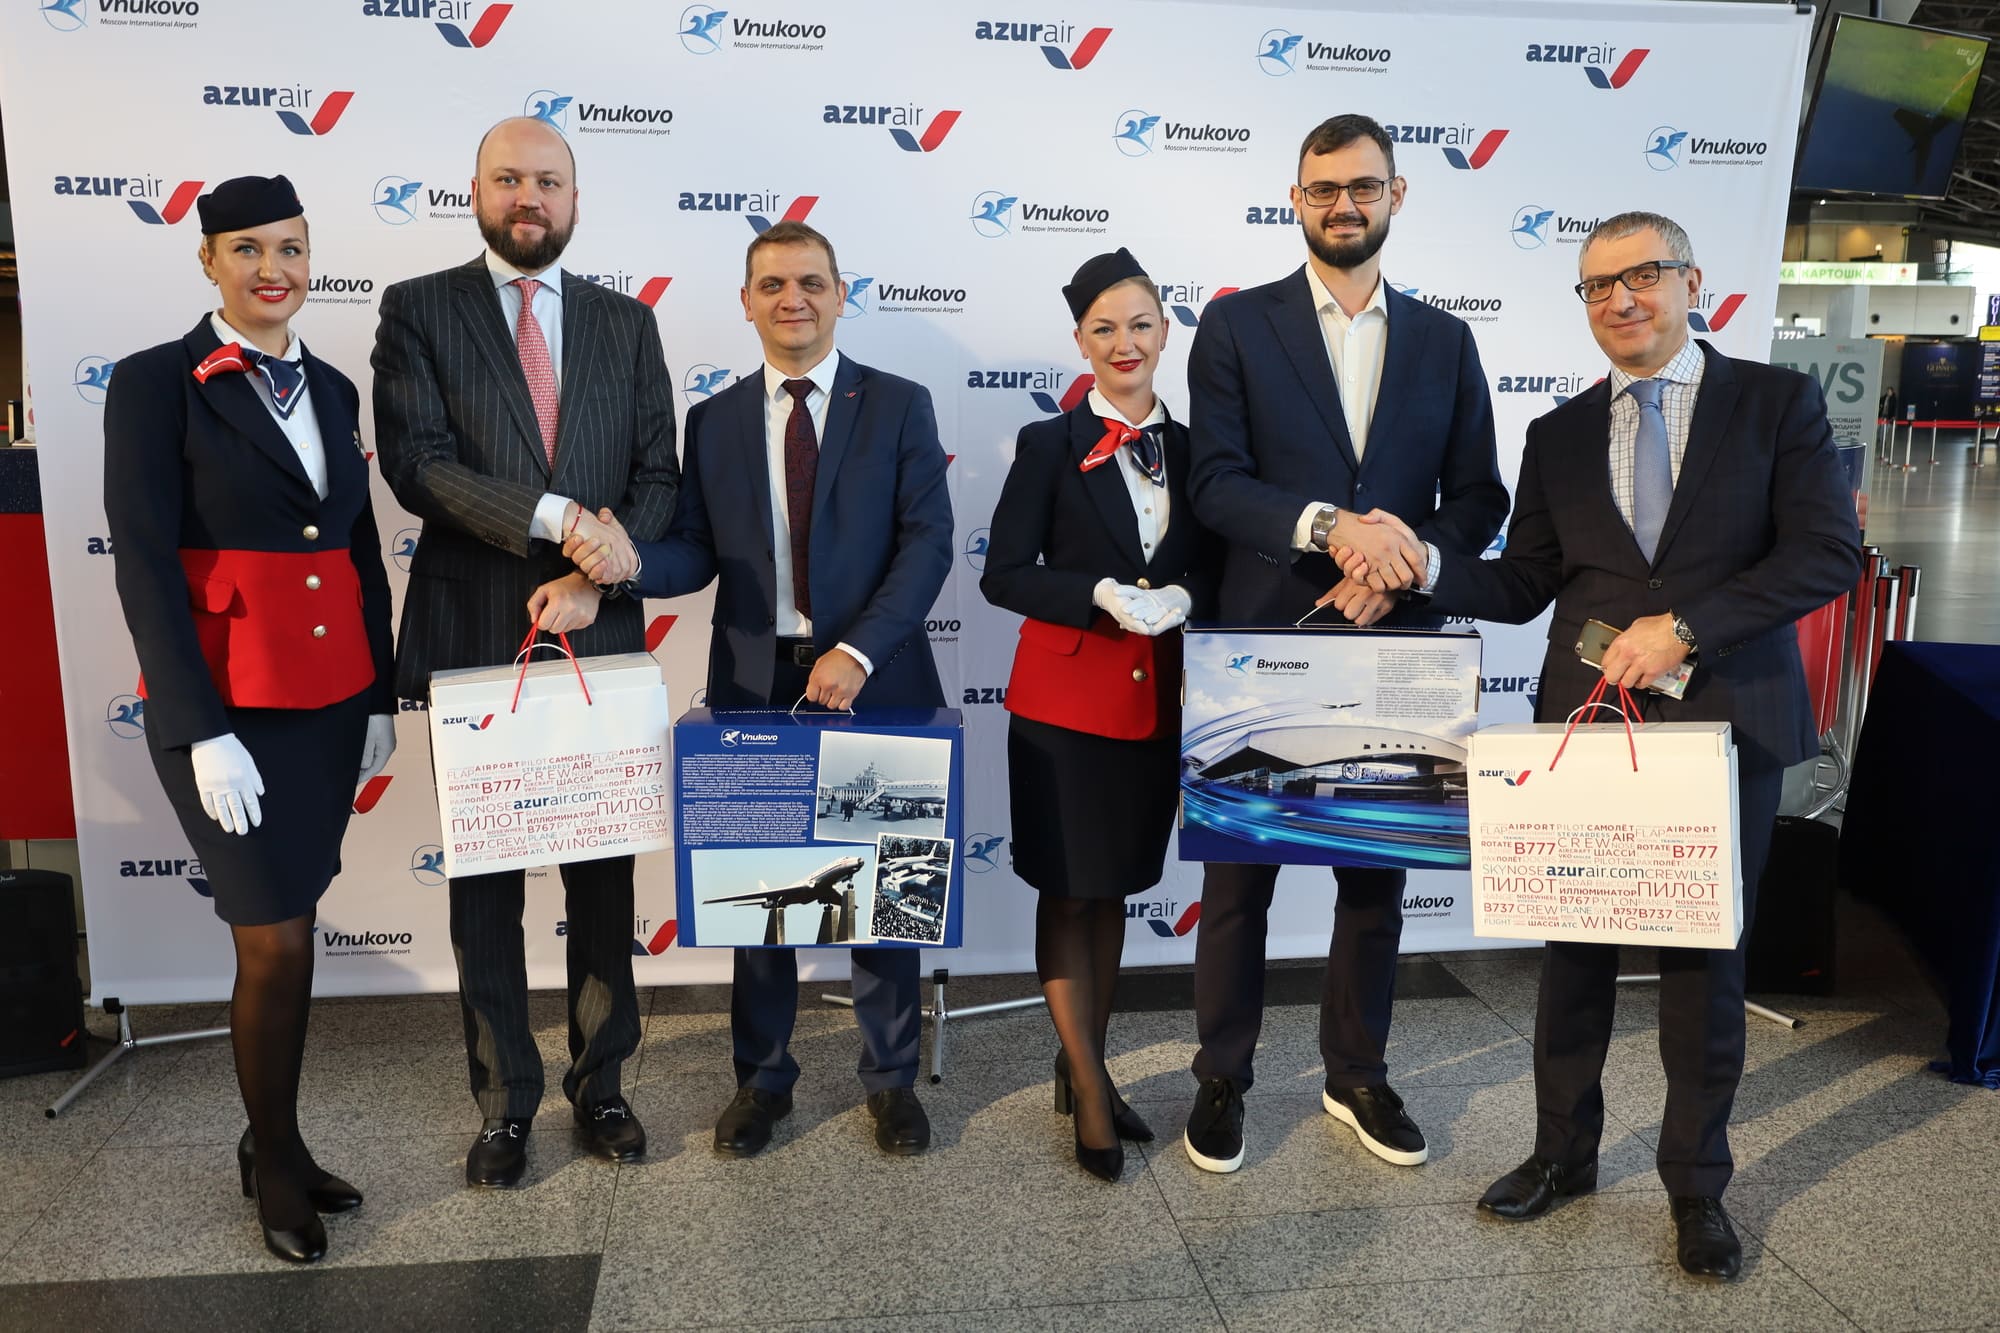 Международный аэропорт Внуково и авиакомпания AZUR air отметили 5 лет успешного сотрудничества